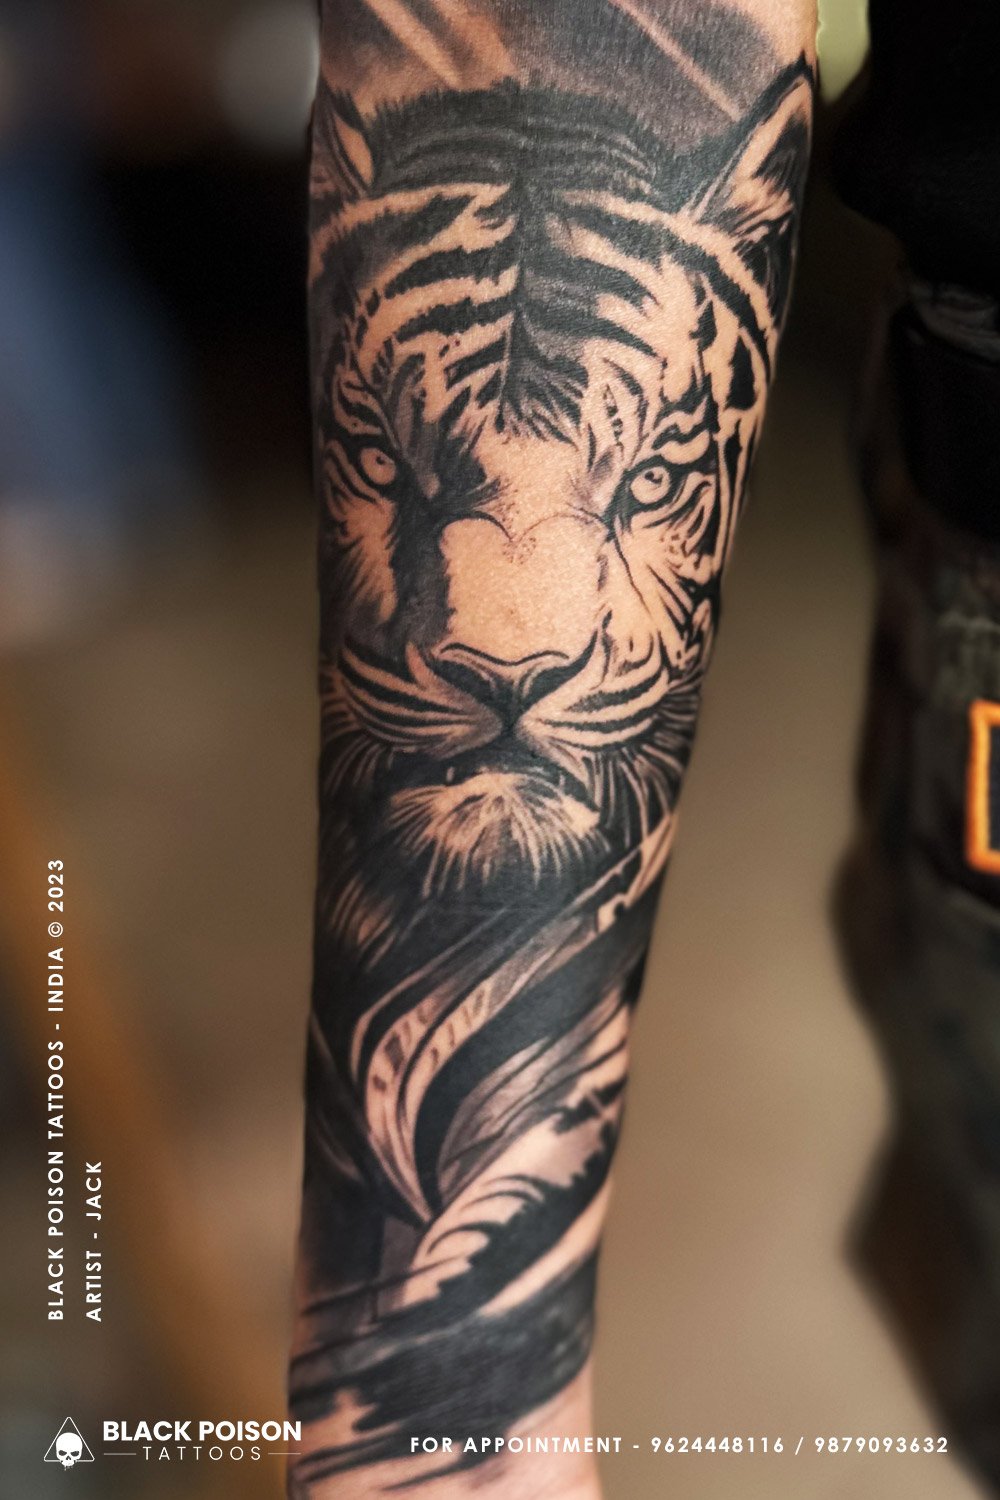 Tiger tattoo art work